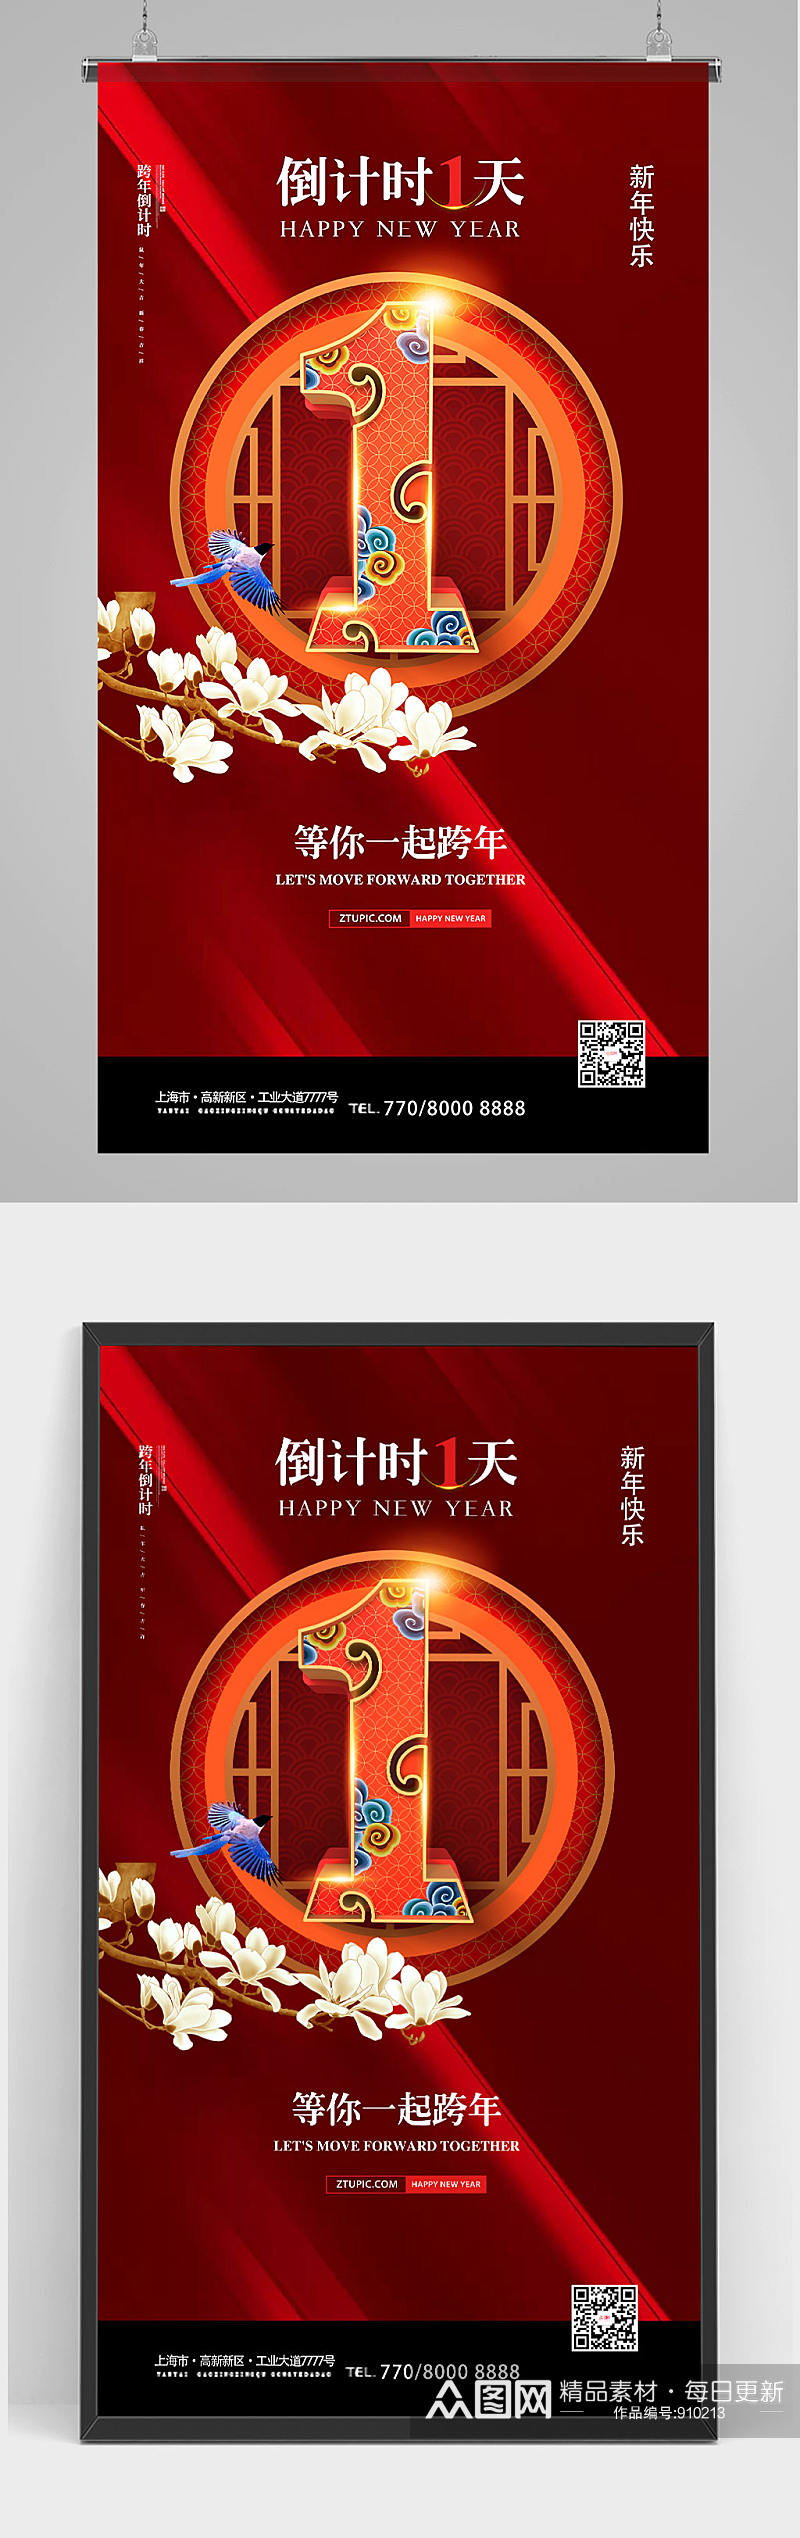 2021红色中式元旦新年跨年倒计时竖版海报设计素材